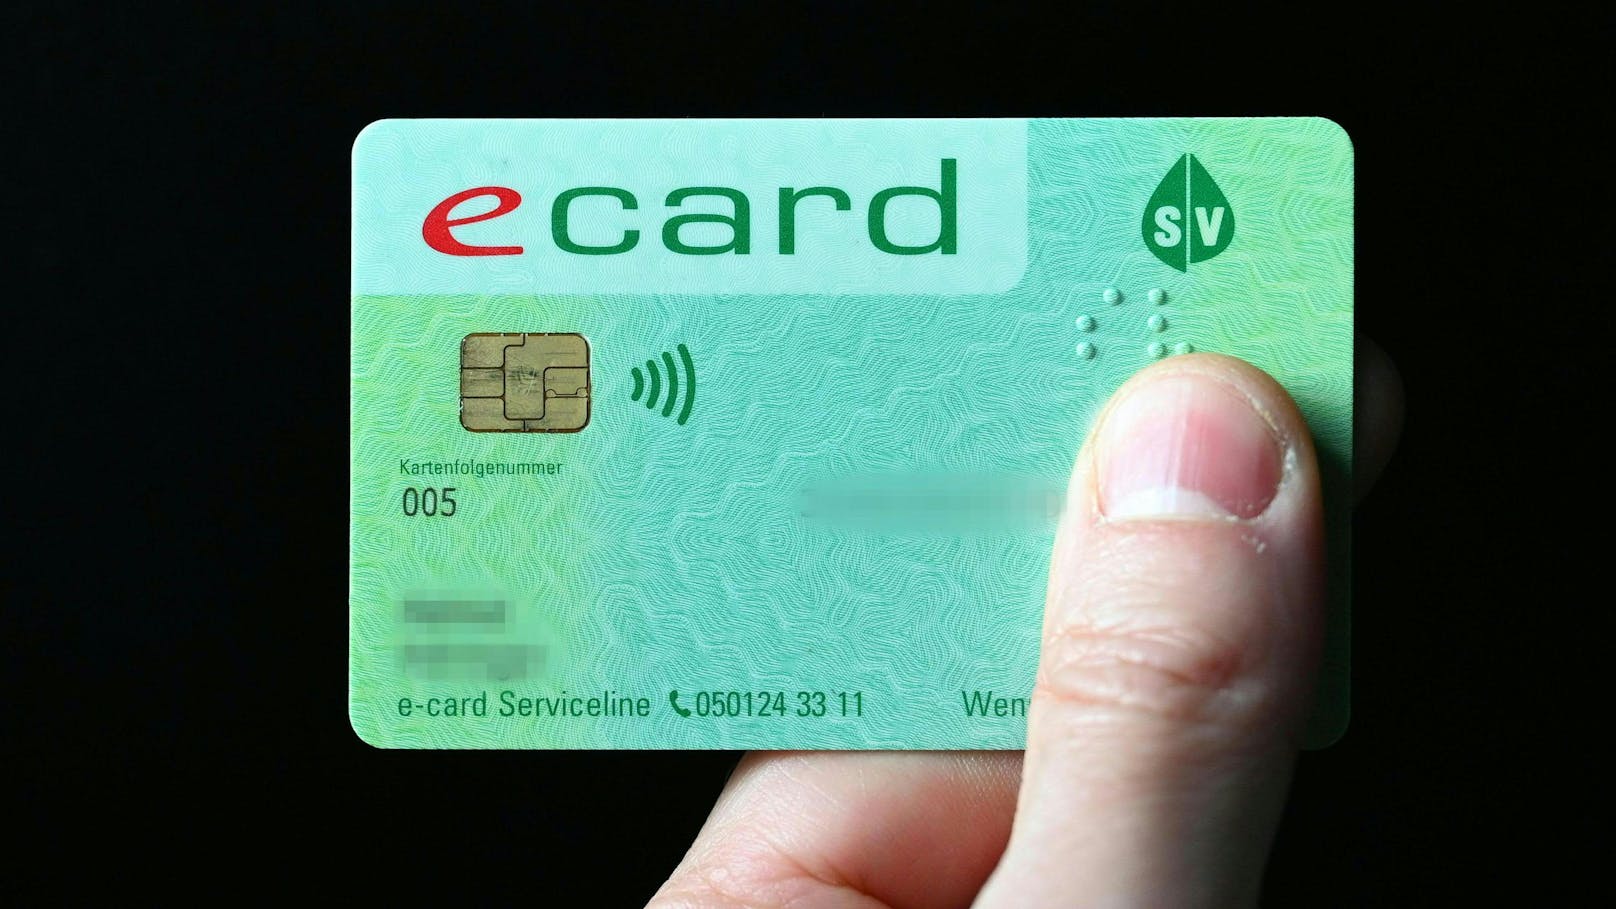 Über 100.000 E-Cards gesperrt – jetzt neue Wende